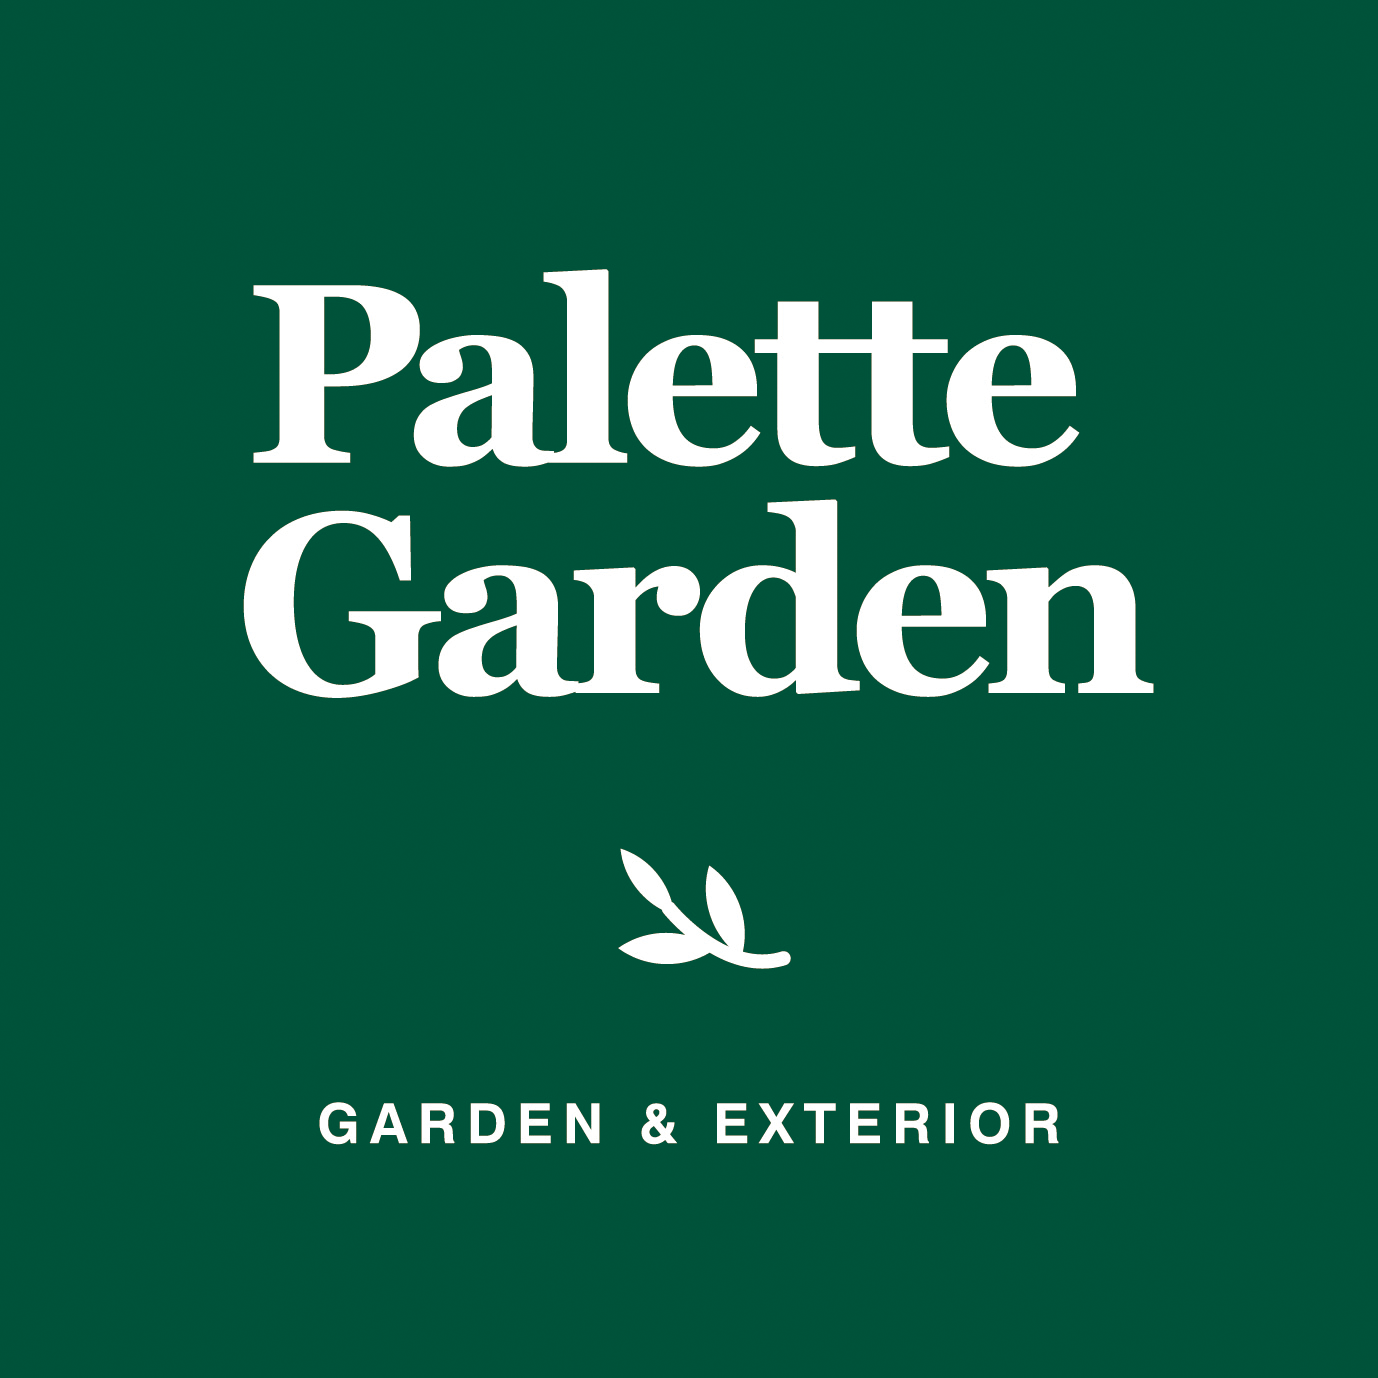 Palette Garden